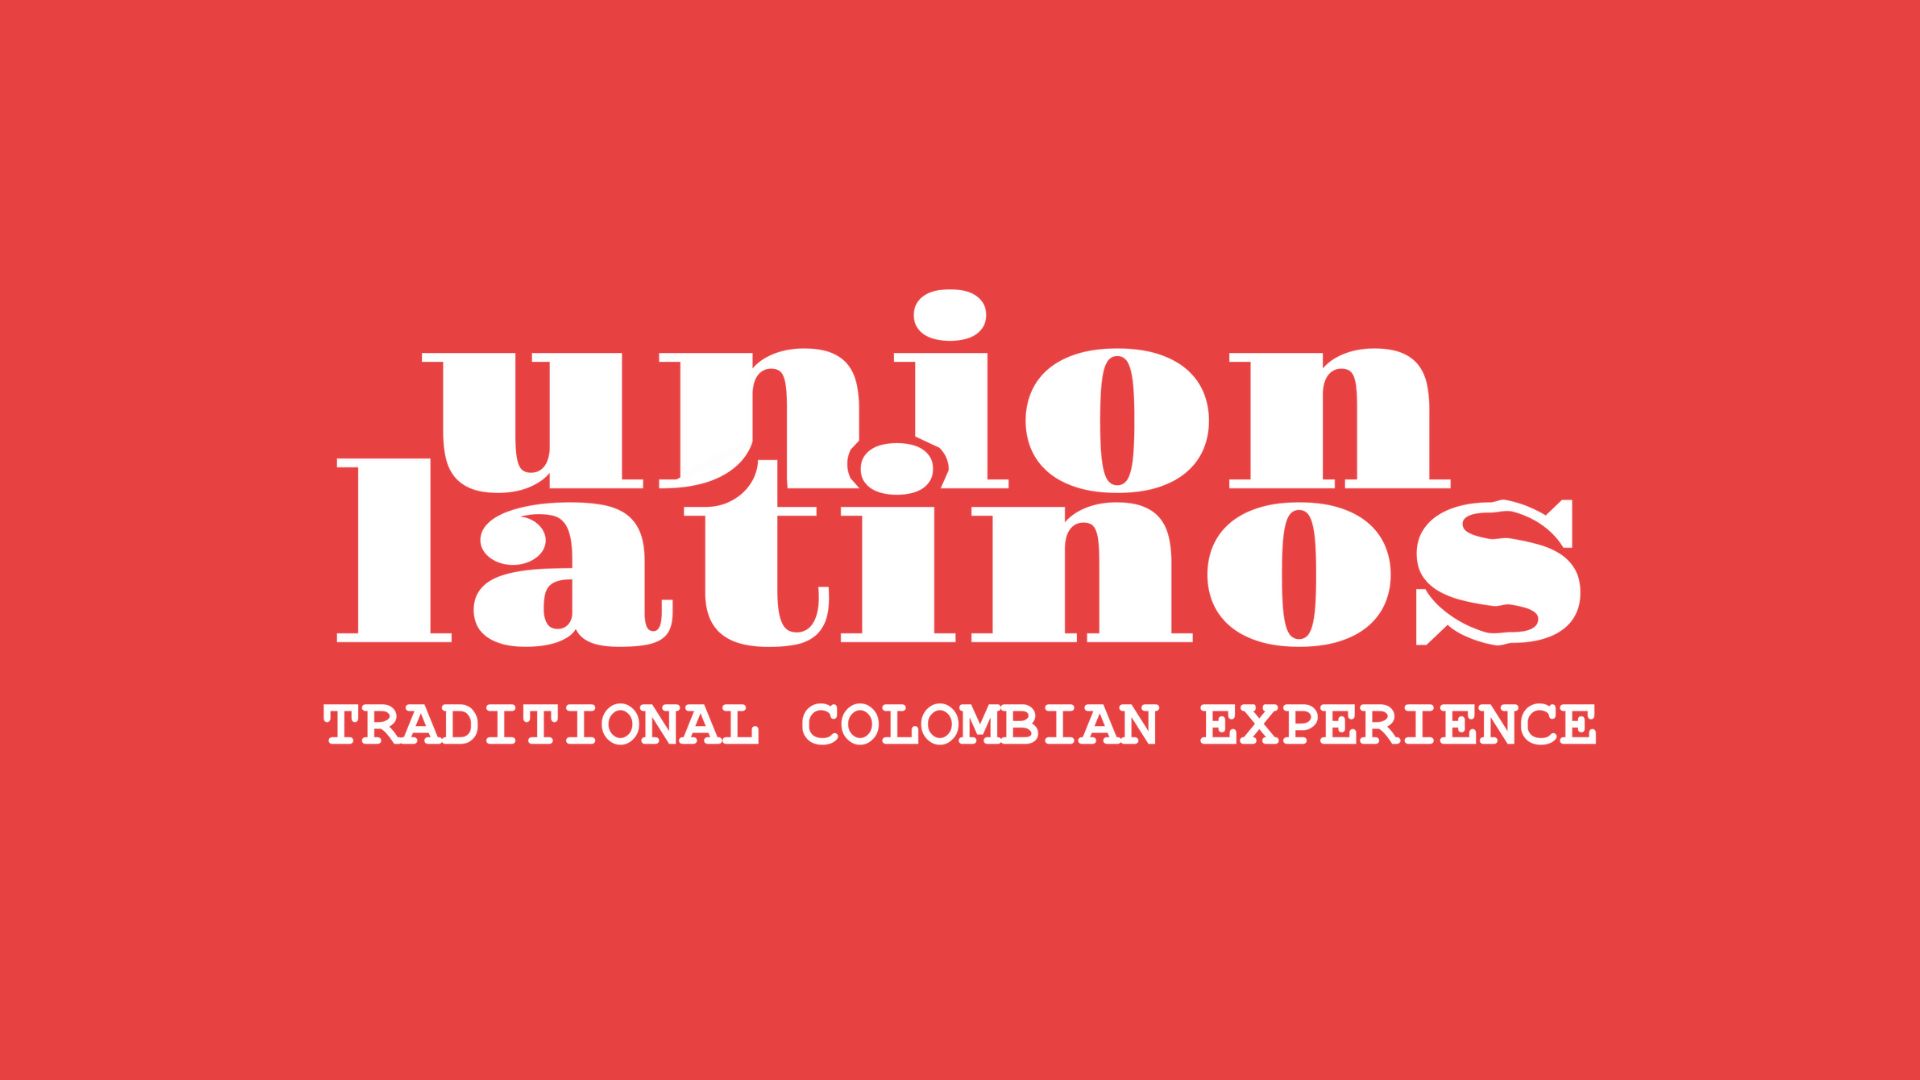 Union Latinos